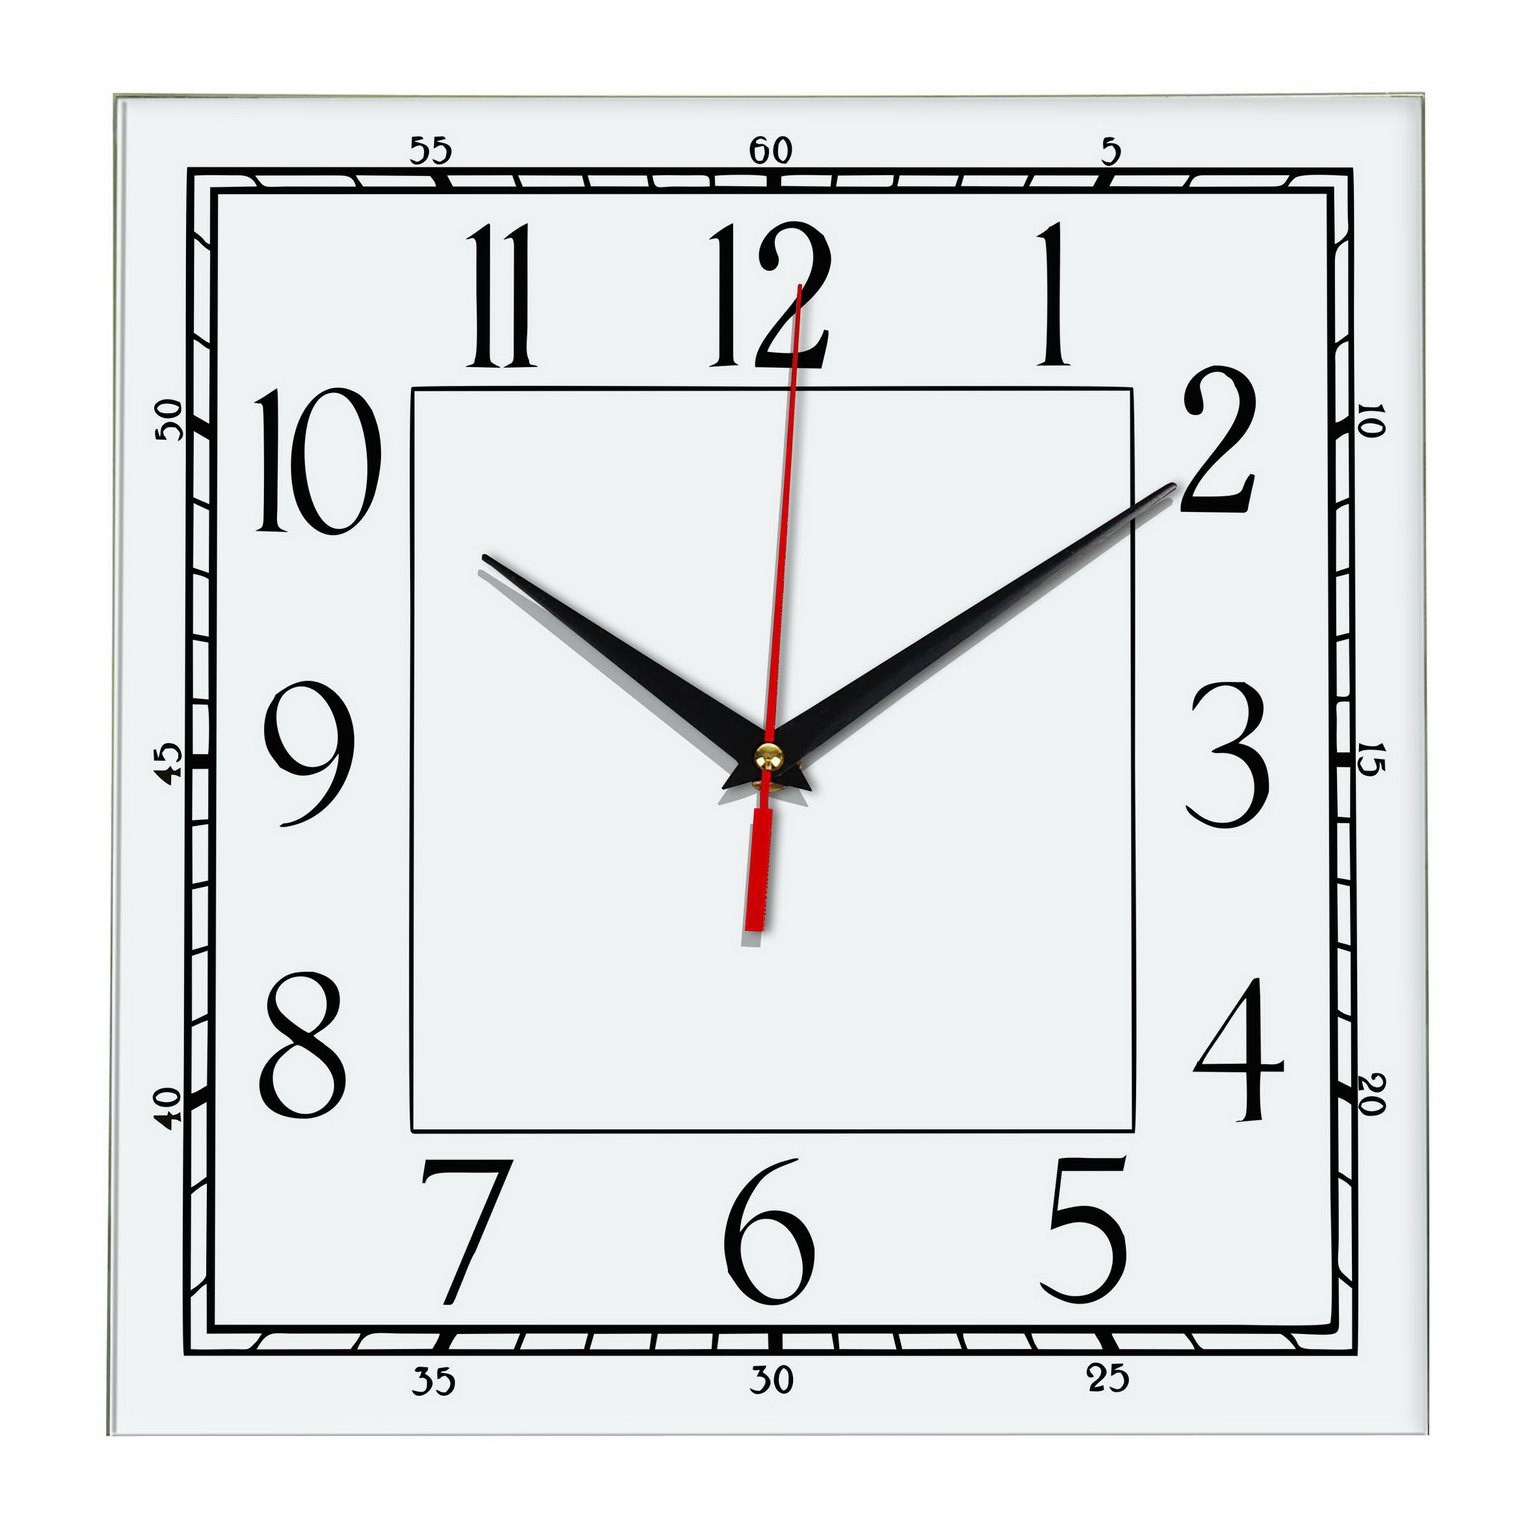 Циферблаты часов прямоугольные. Часы квадратные. Часы настенные. Часы квадратной формы. Квадратный циферблат для настенных часов.